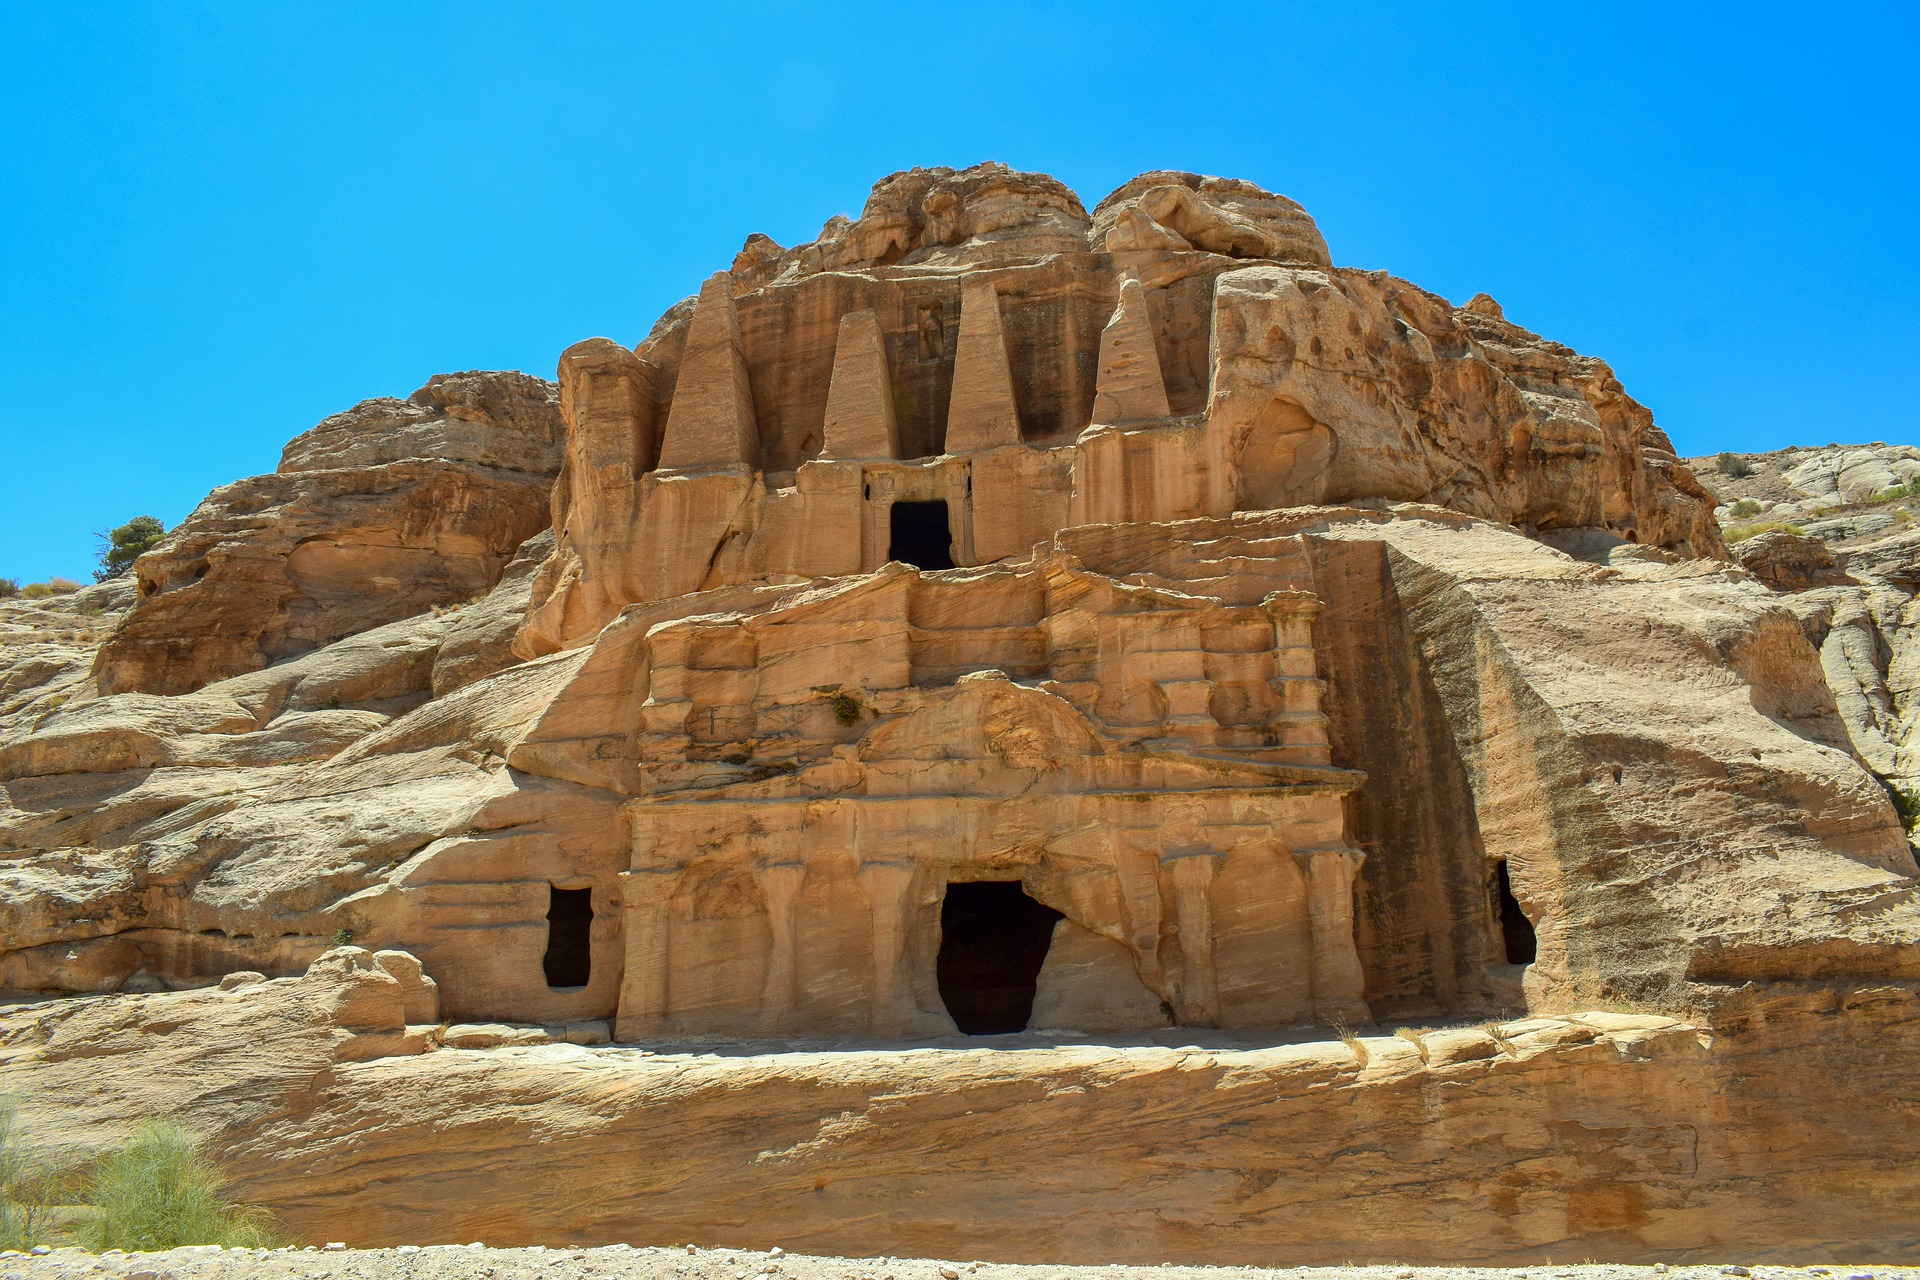 Image of Petra in Jordan